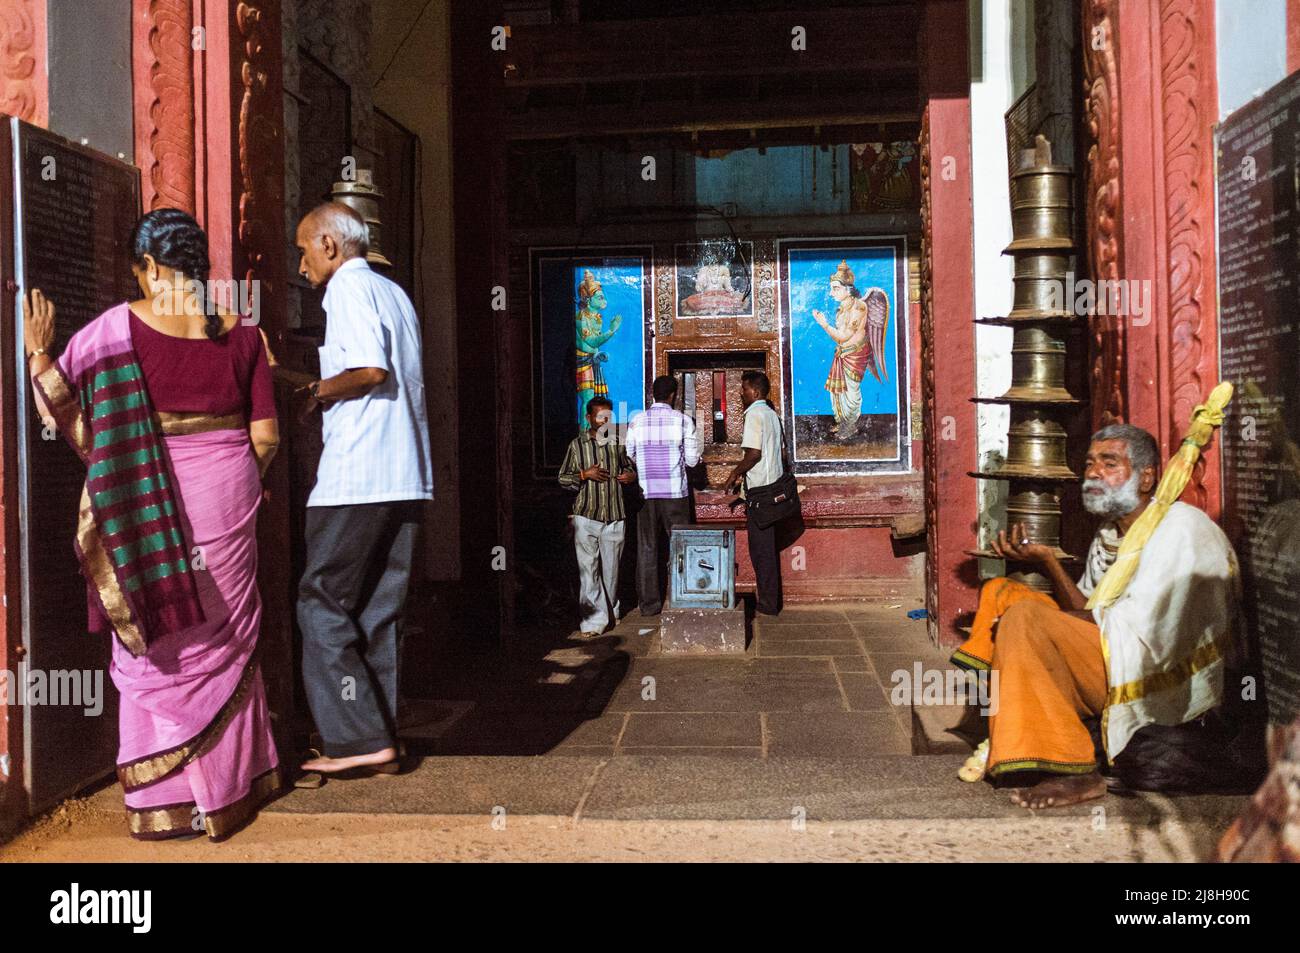 Udupi, Karnataka, India : Los peregrinos se encuentran junto a un mendigo en un santuario del templo Krishna del siglo 13th. El templo fue fundado por la sa hindú local Foto de stock